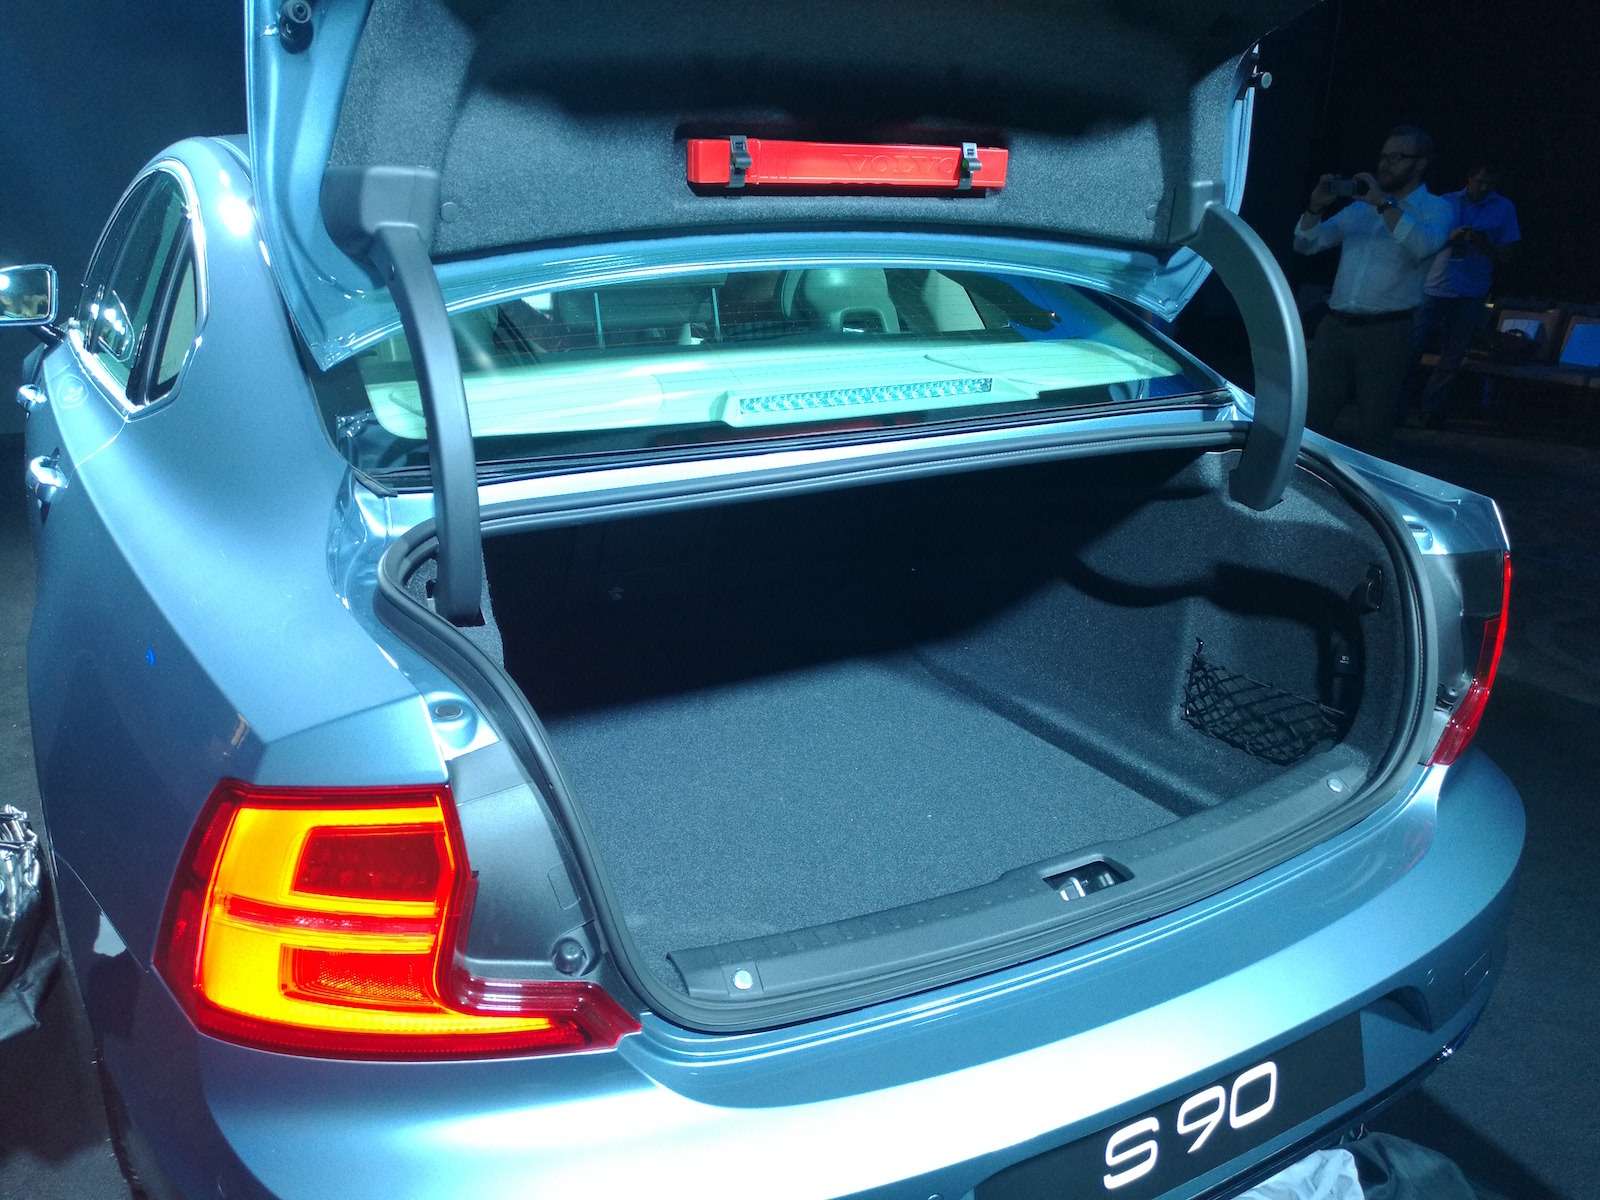 У Volvo S90 не только просторный второй ряд, но и внушительного объема багажник.